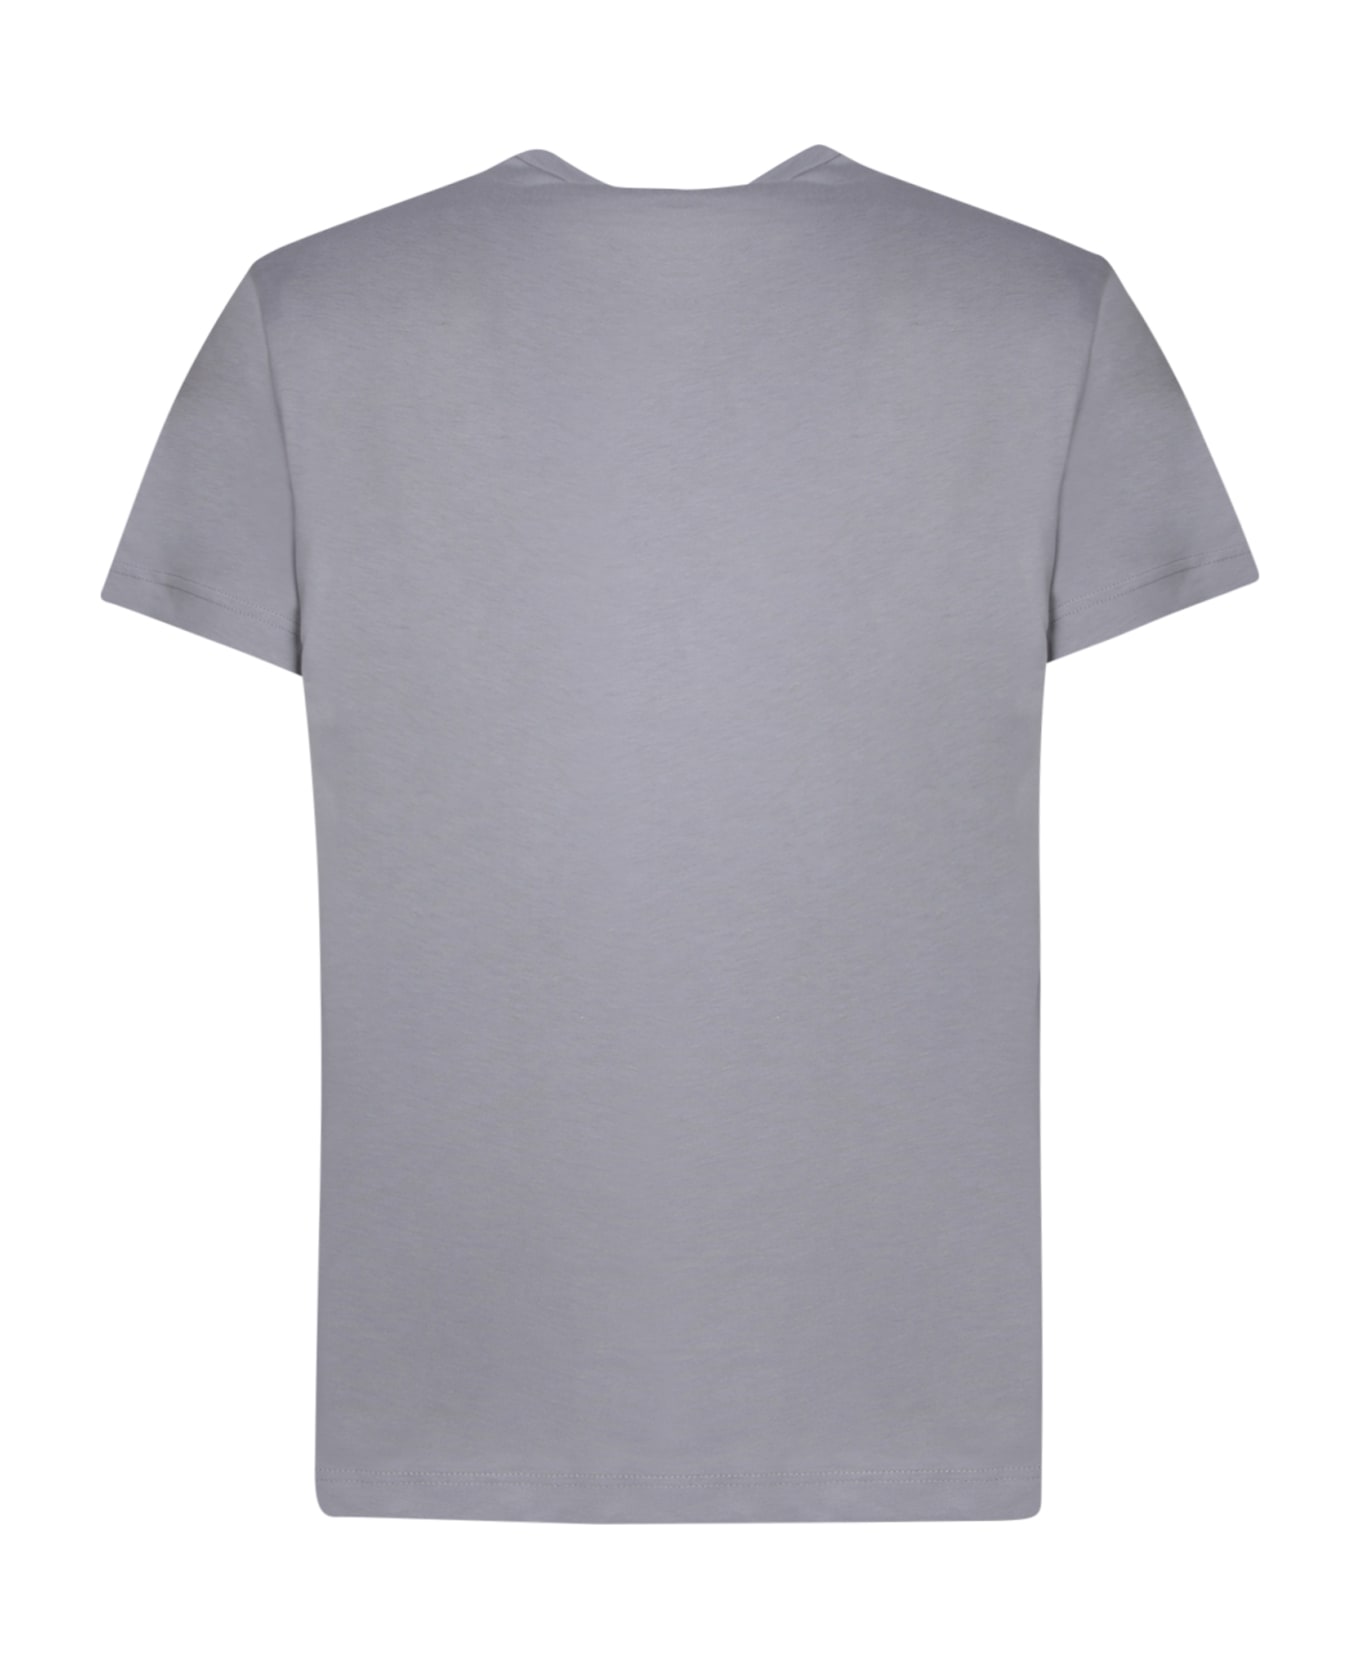 Comme des Garçons Shirt Regular Fit Grey T-shirt - Grey